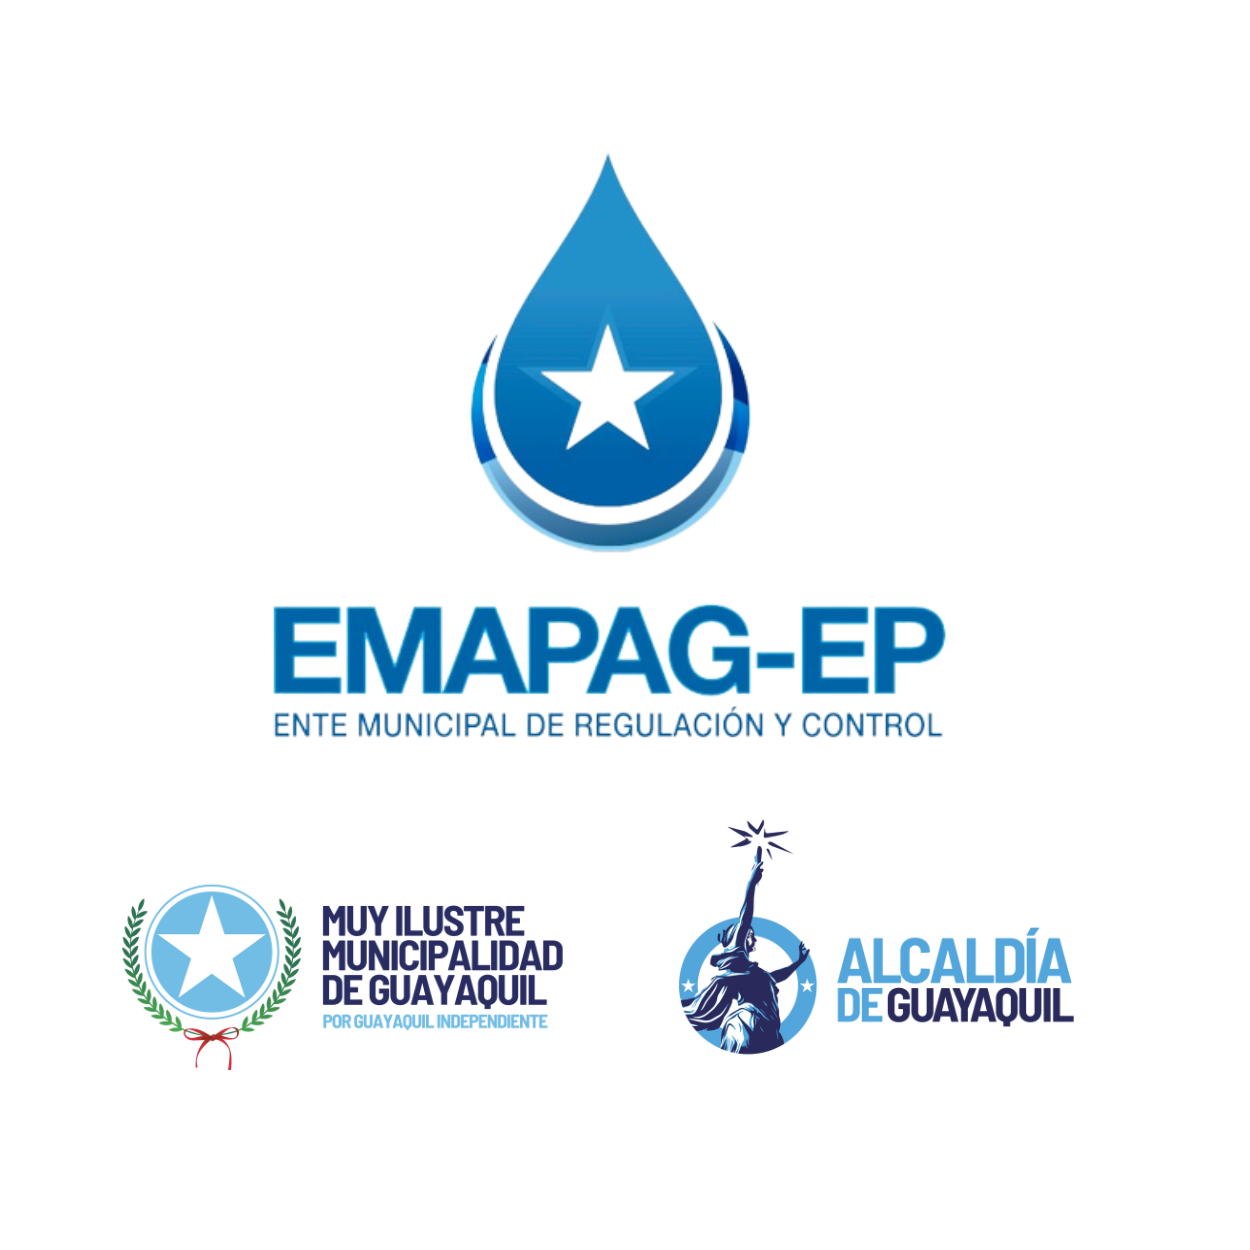 EMAPAG-EP